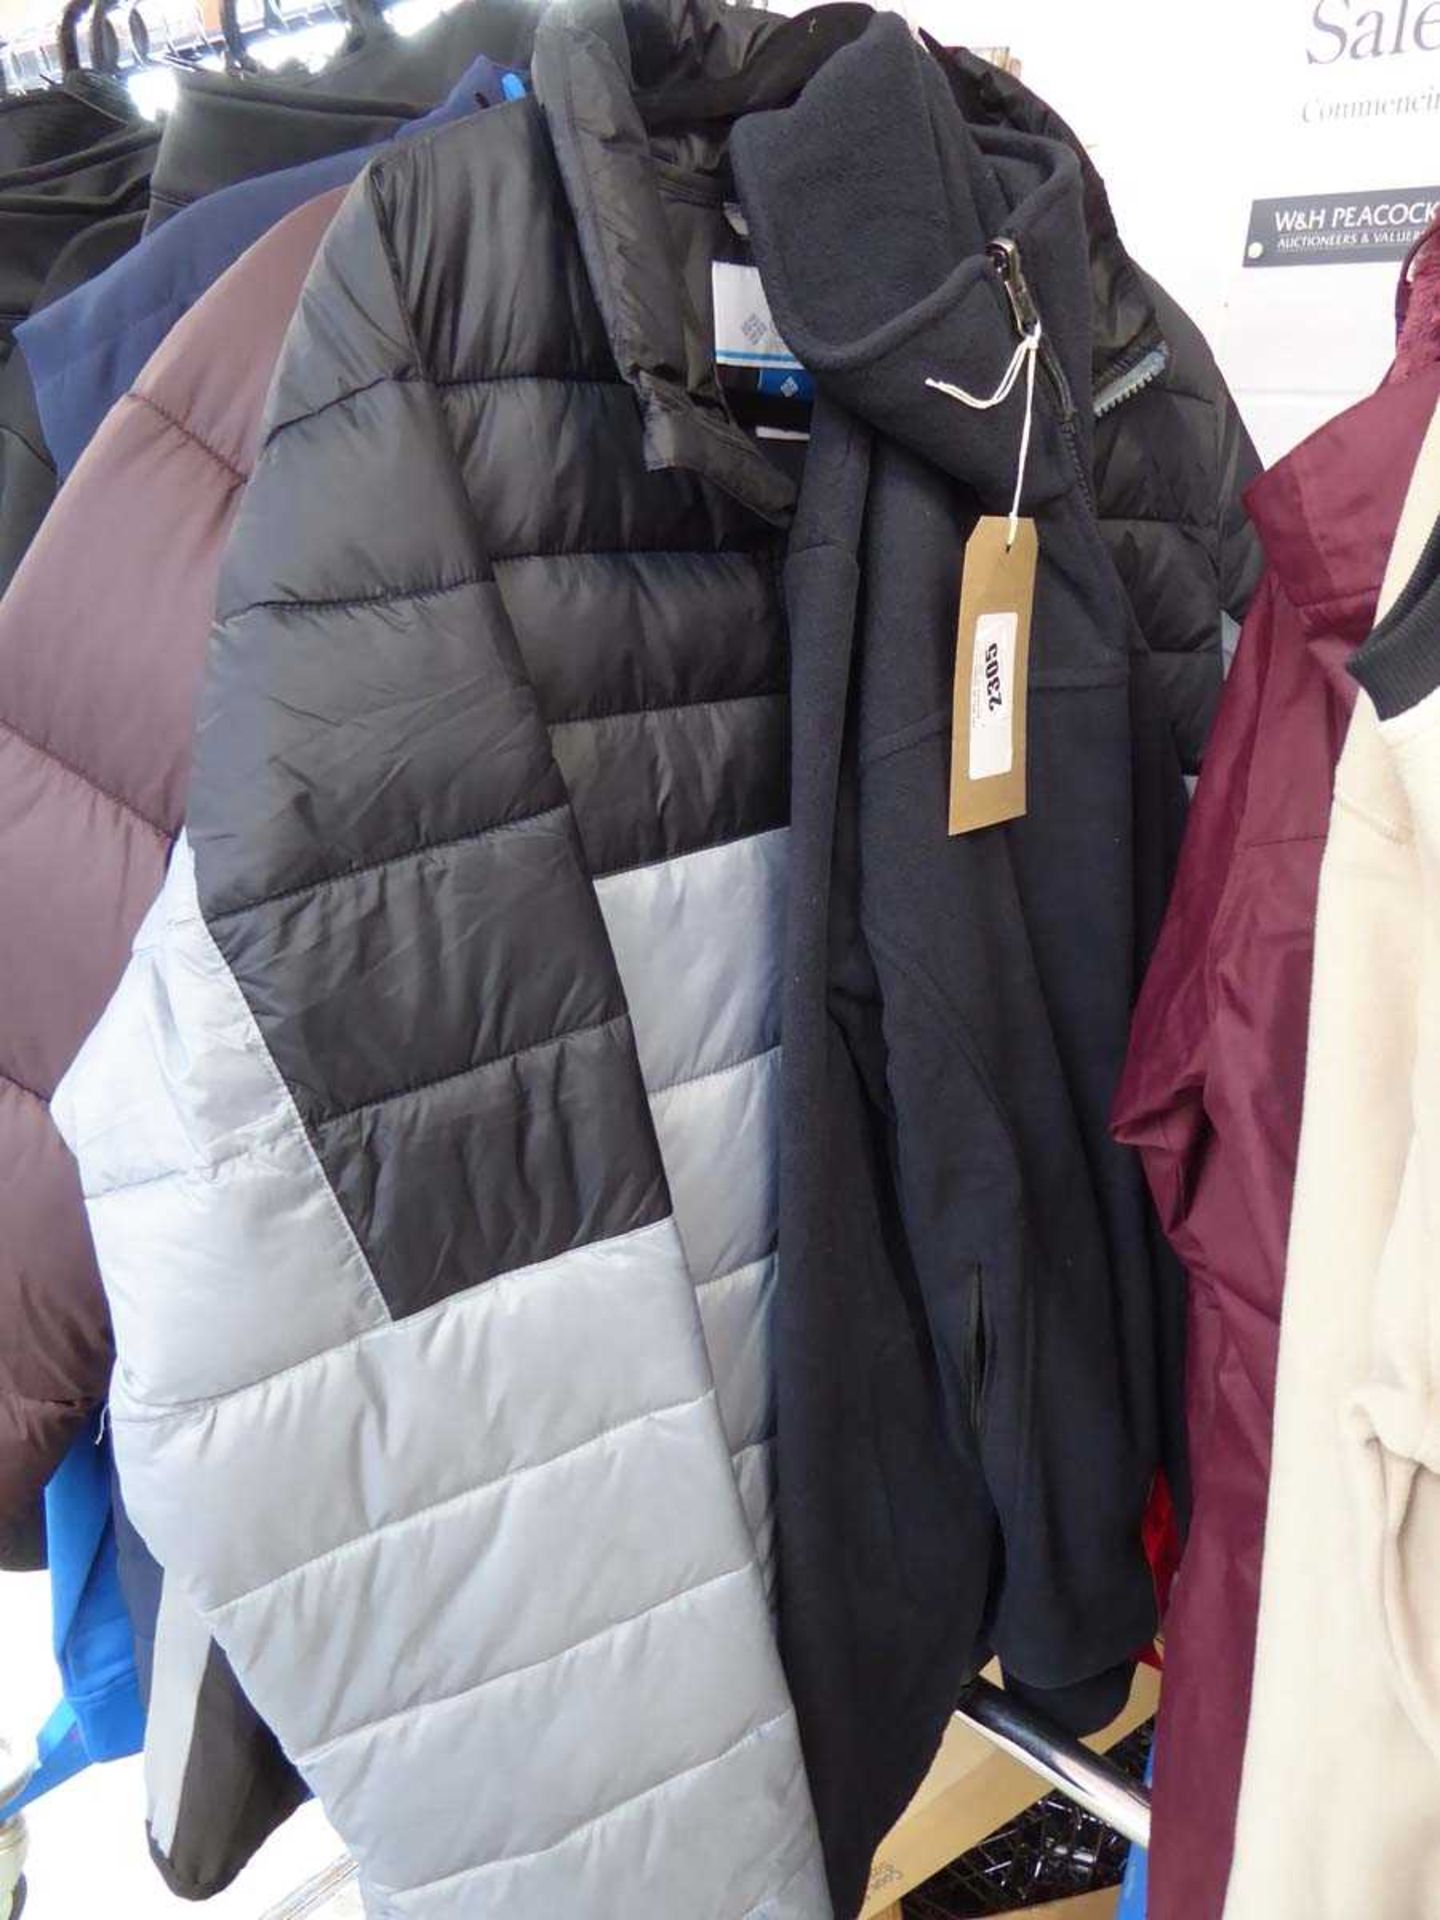 +VAT Columbia full zip waterproof jacket in black and grey (size M) with Columbia full zip fleece in